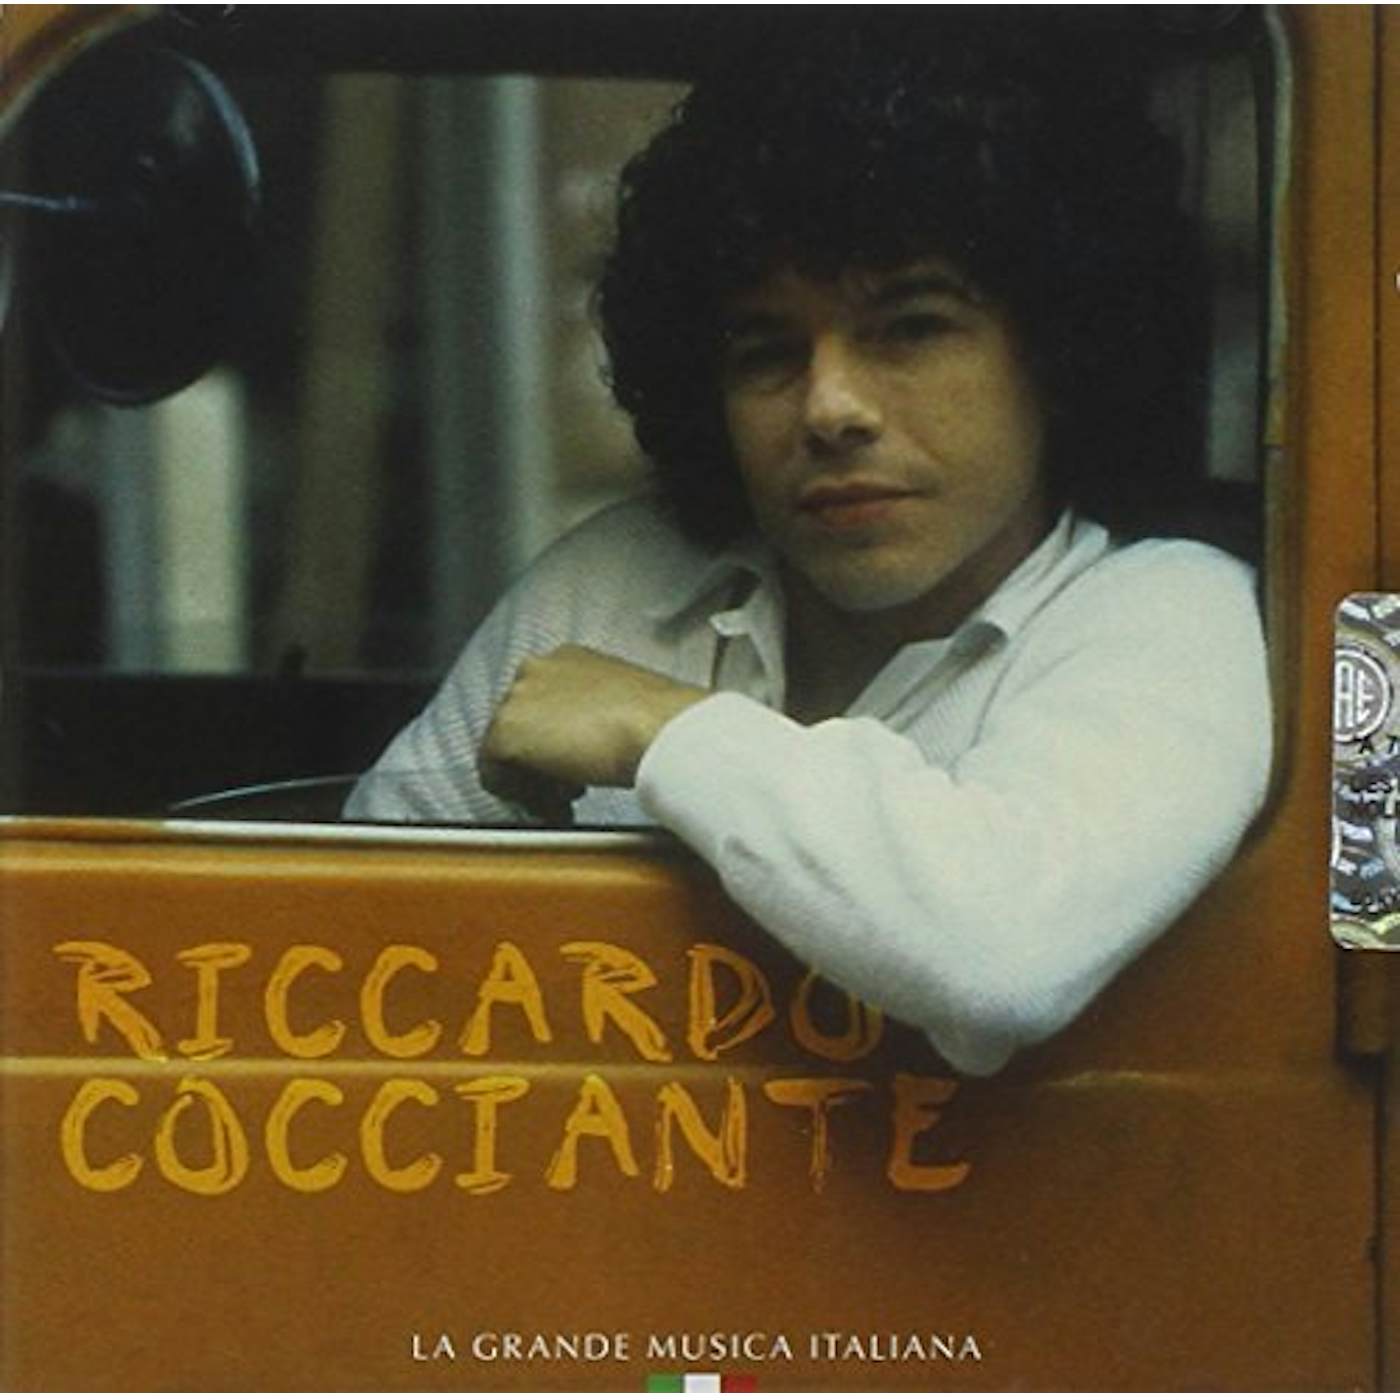 Riccardo Cocciante Cocciante Vinyl Record